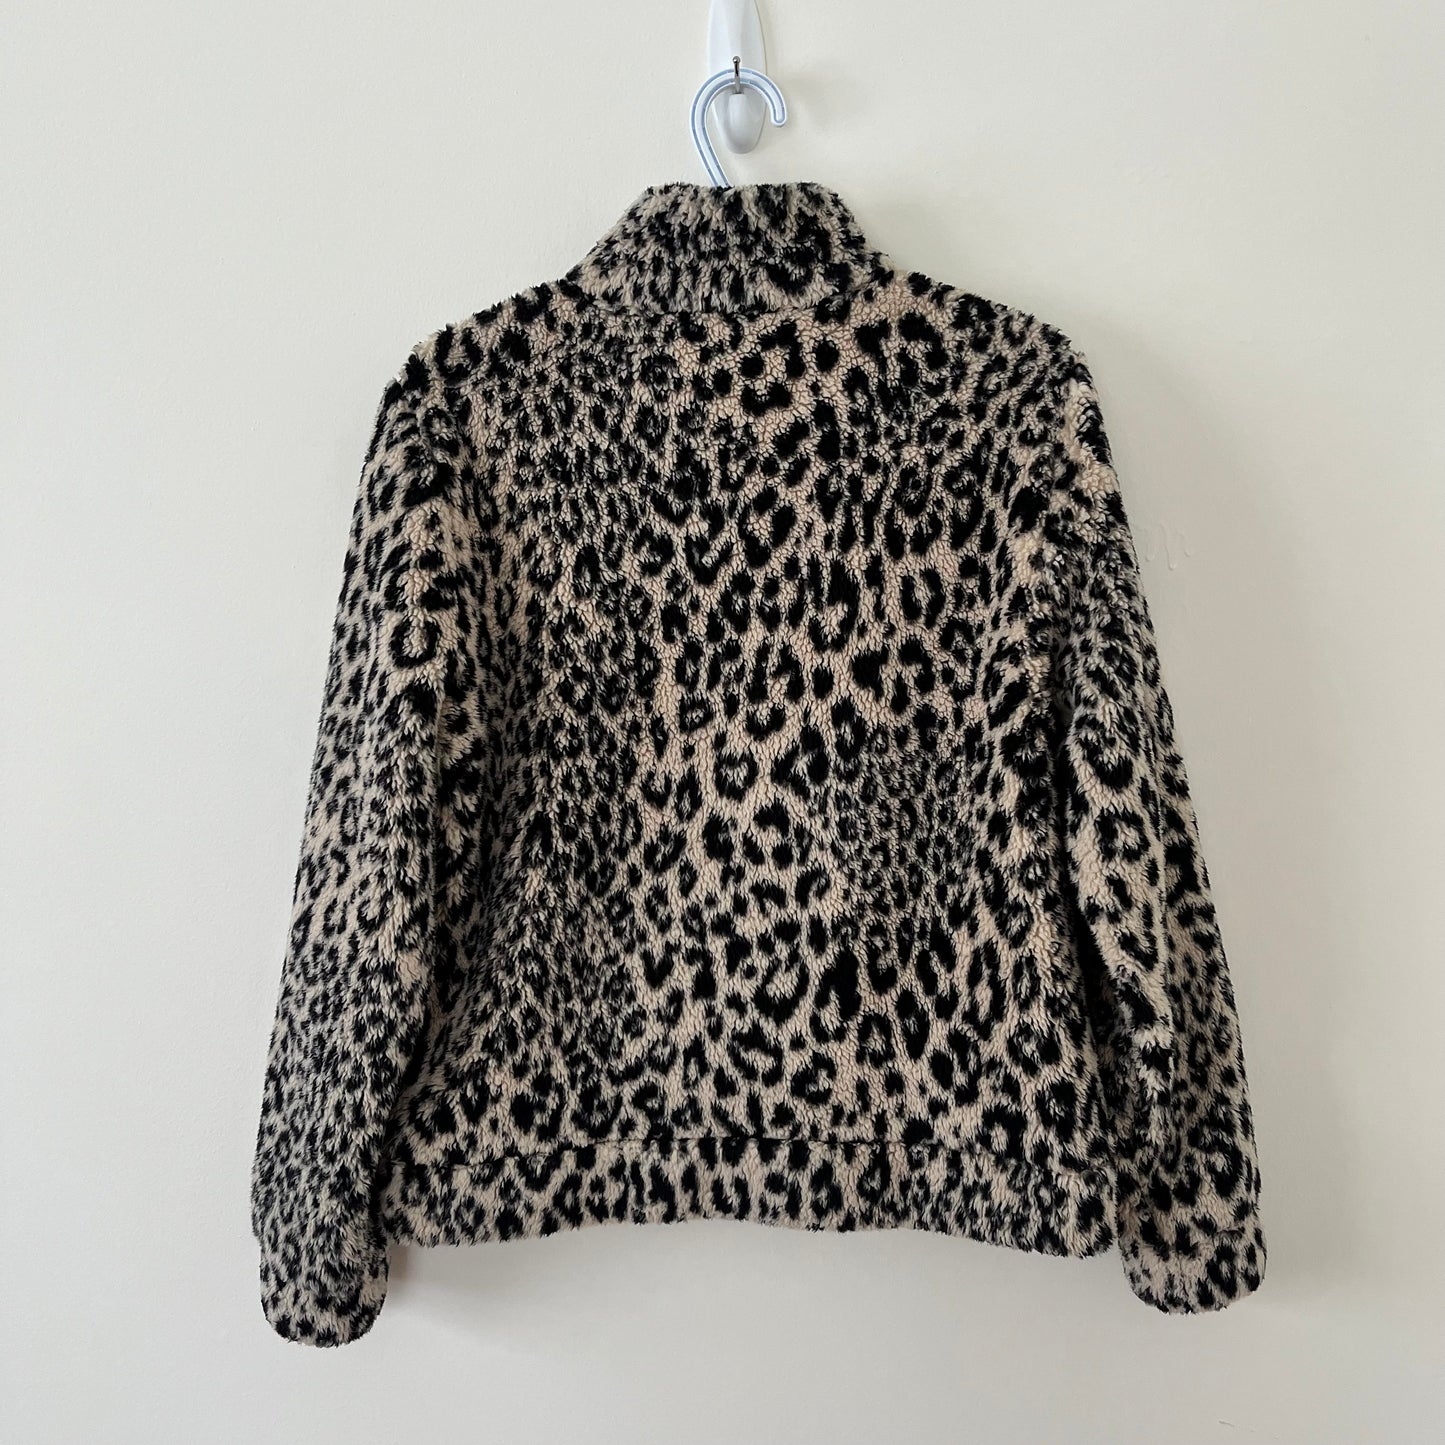 Leopard Fleece Jacket Sweater (S)